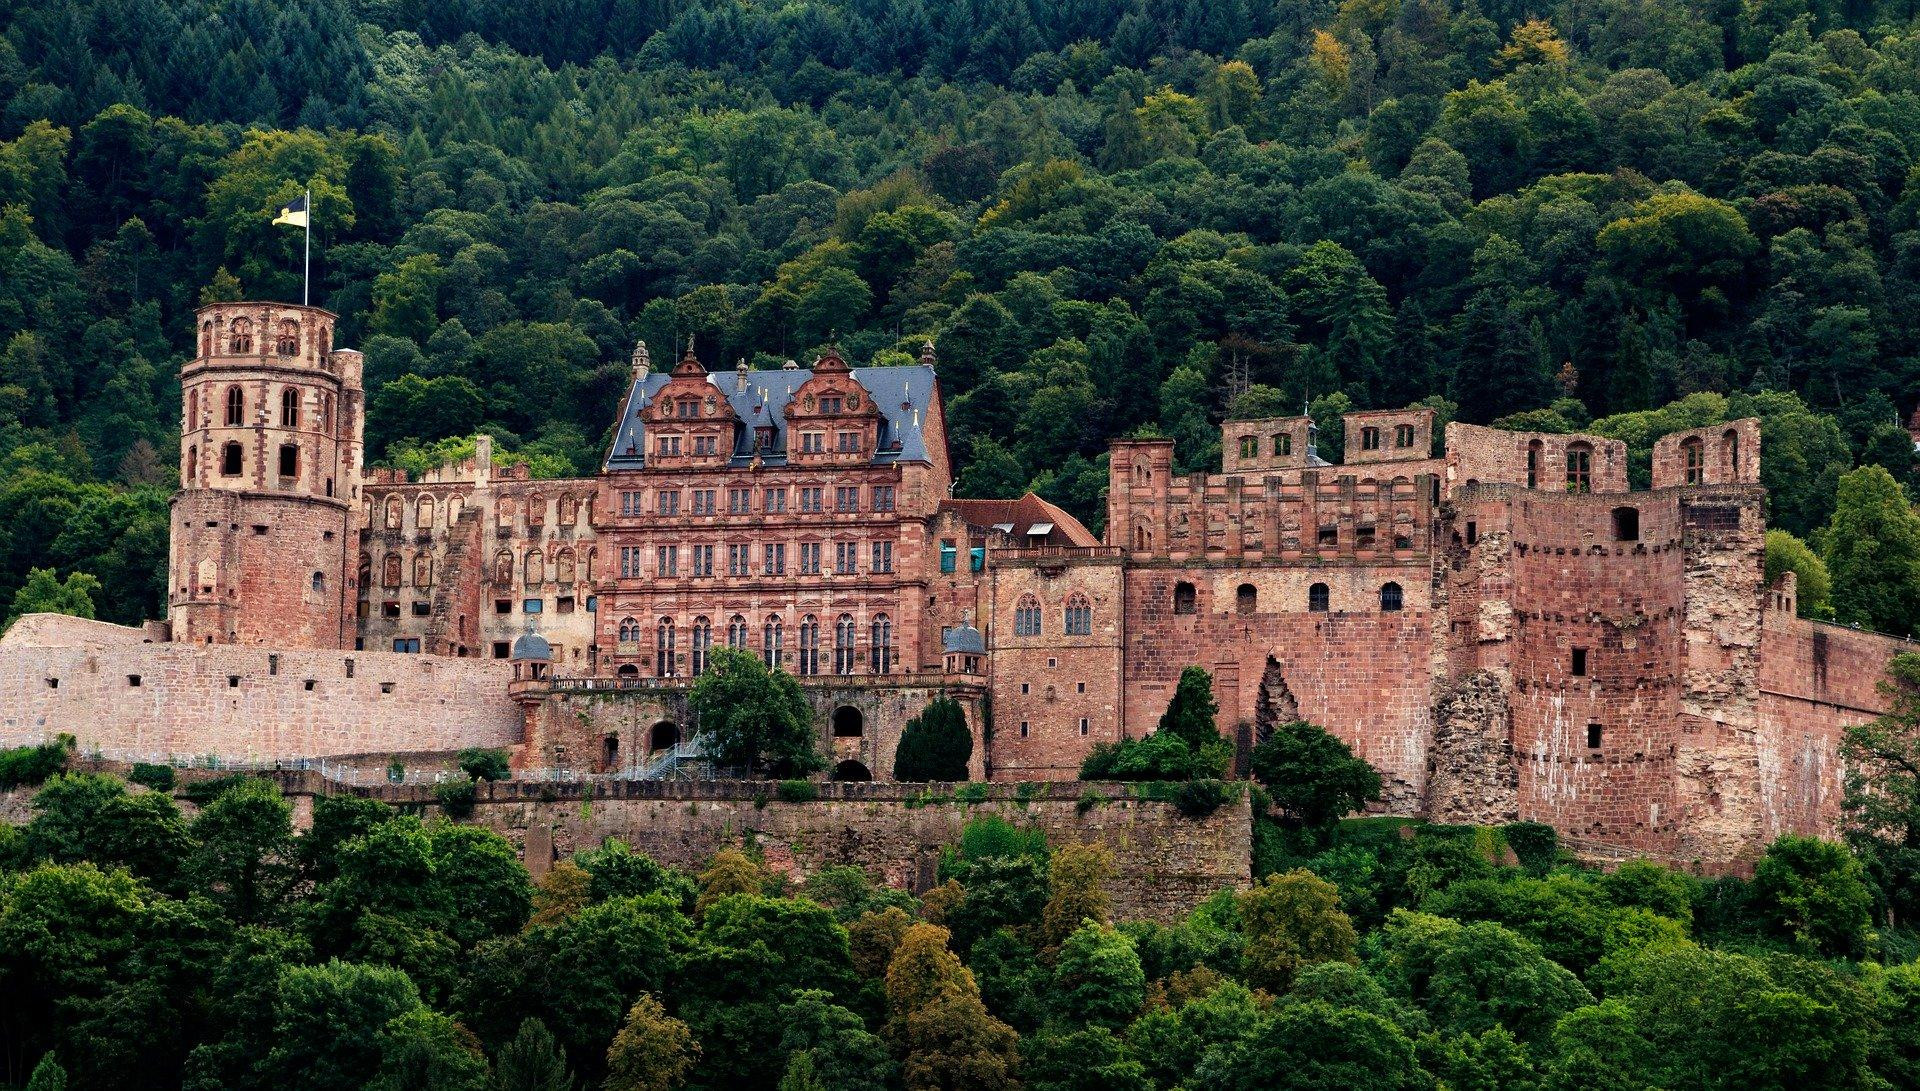 Castelo de Heidelberg, Alemanha